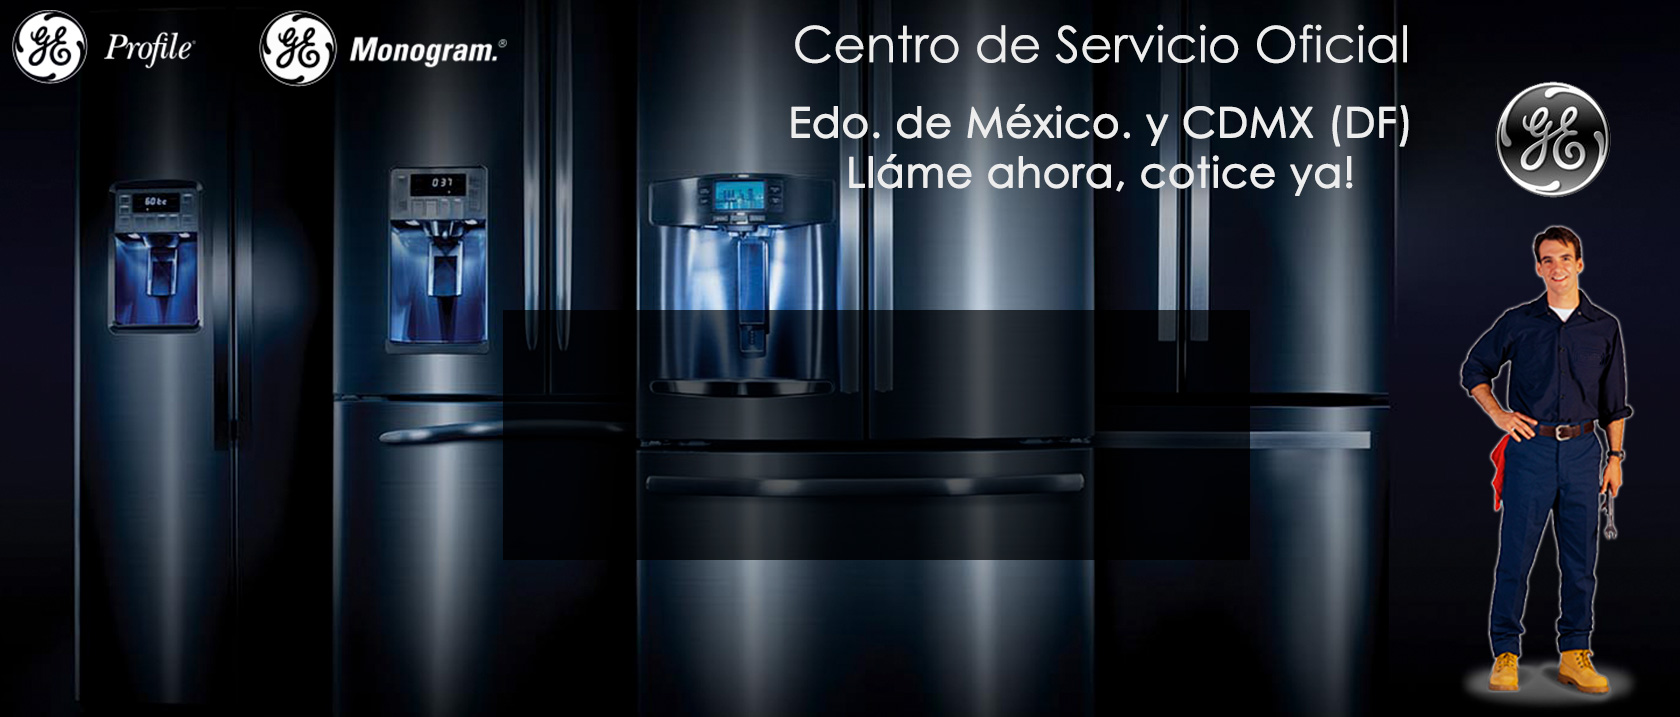 Centro de Servicio Tecnico De Linea Blanca general electric Estado de Mexico DF